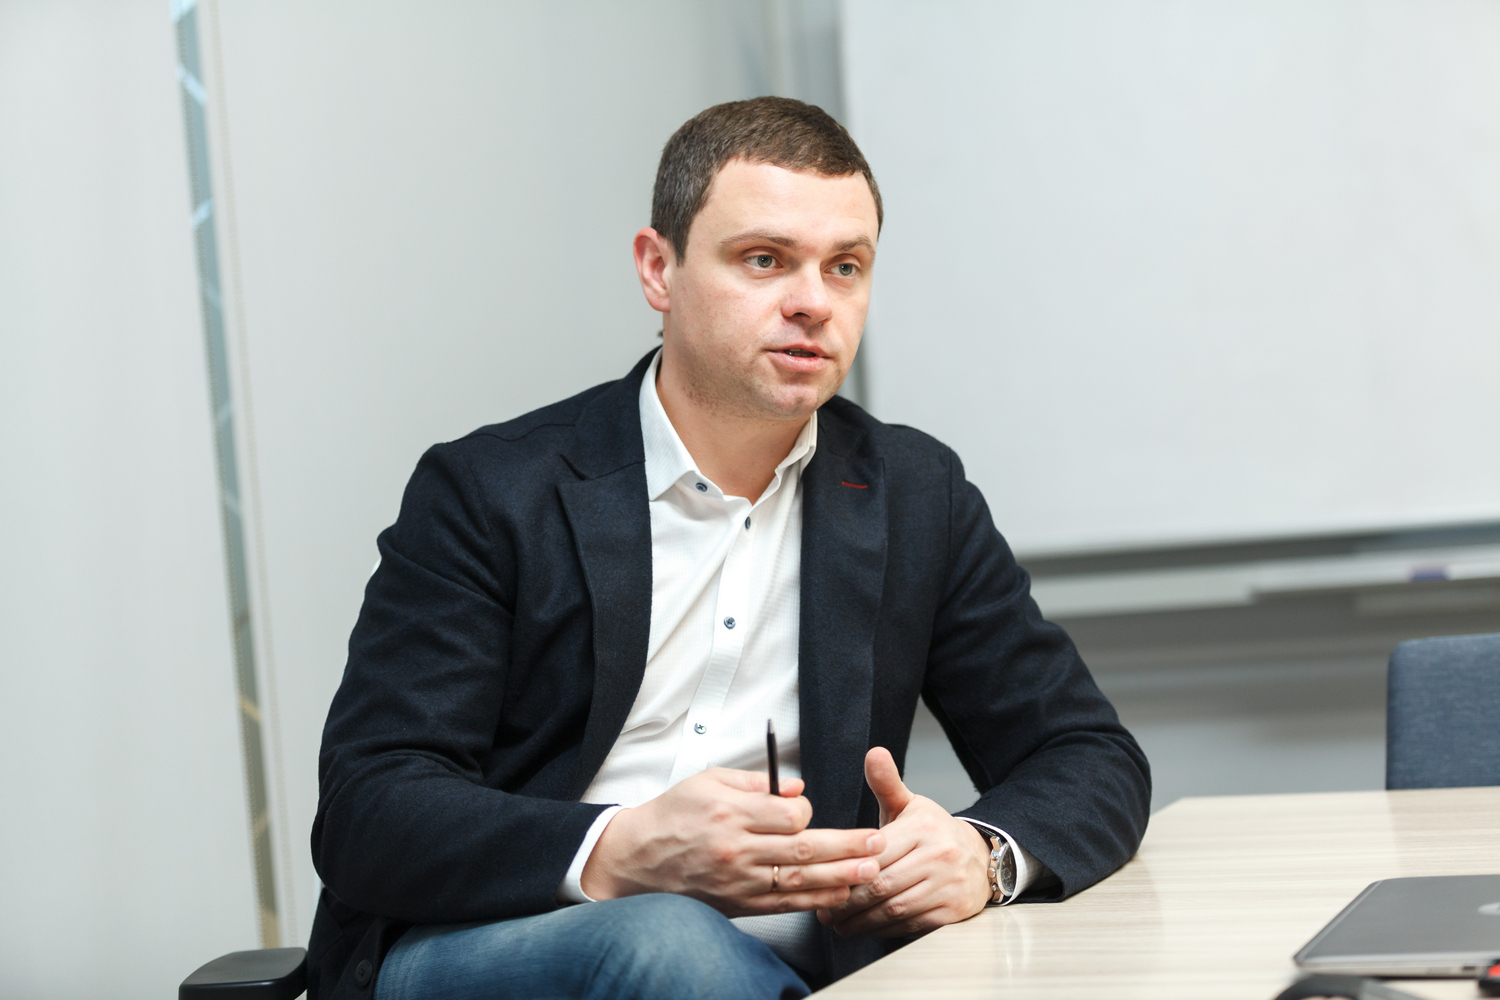 Дмитрий Глотов, директор региона Запад компании «ВымпелКом»